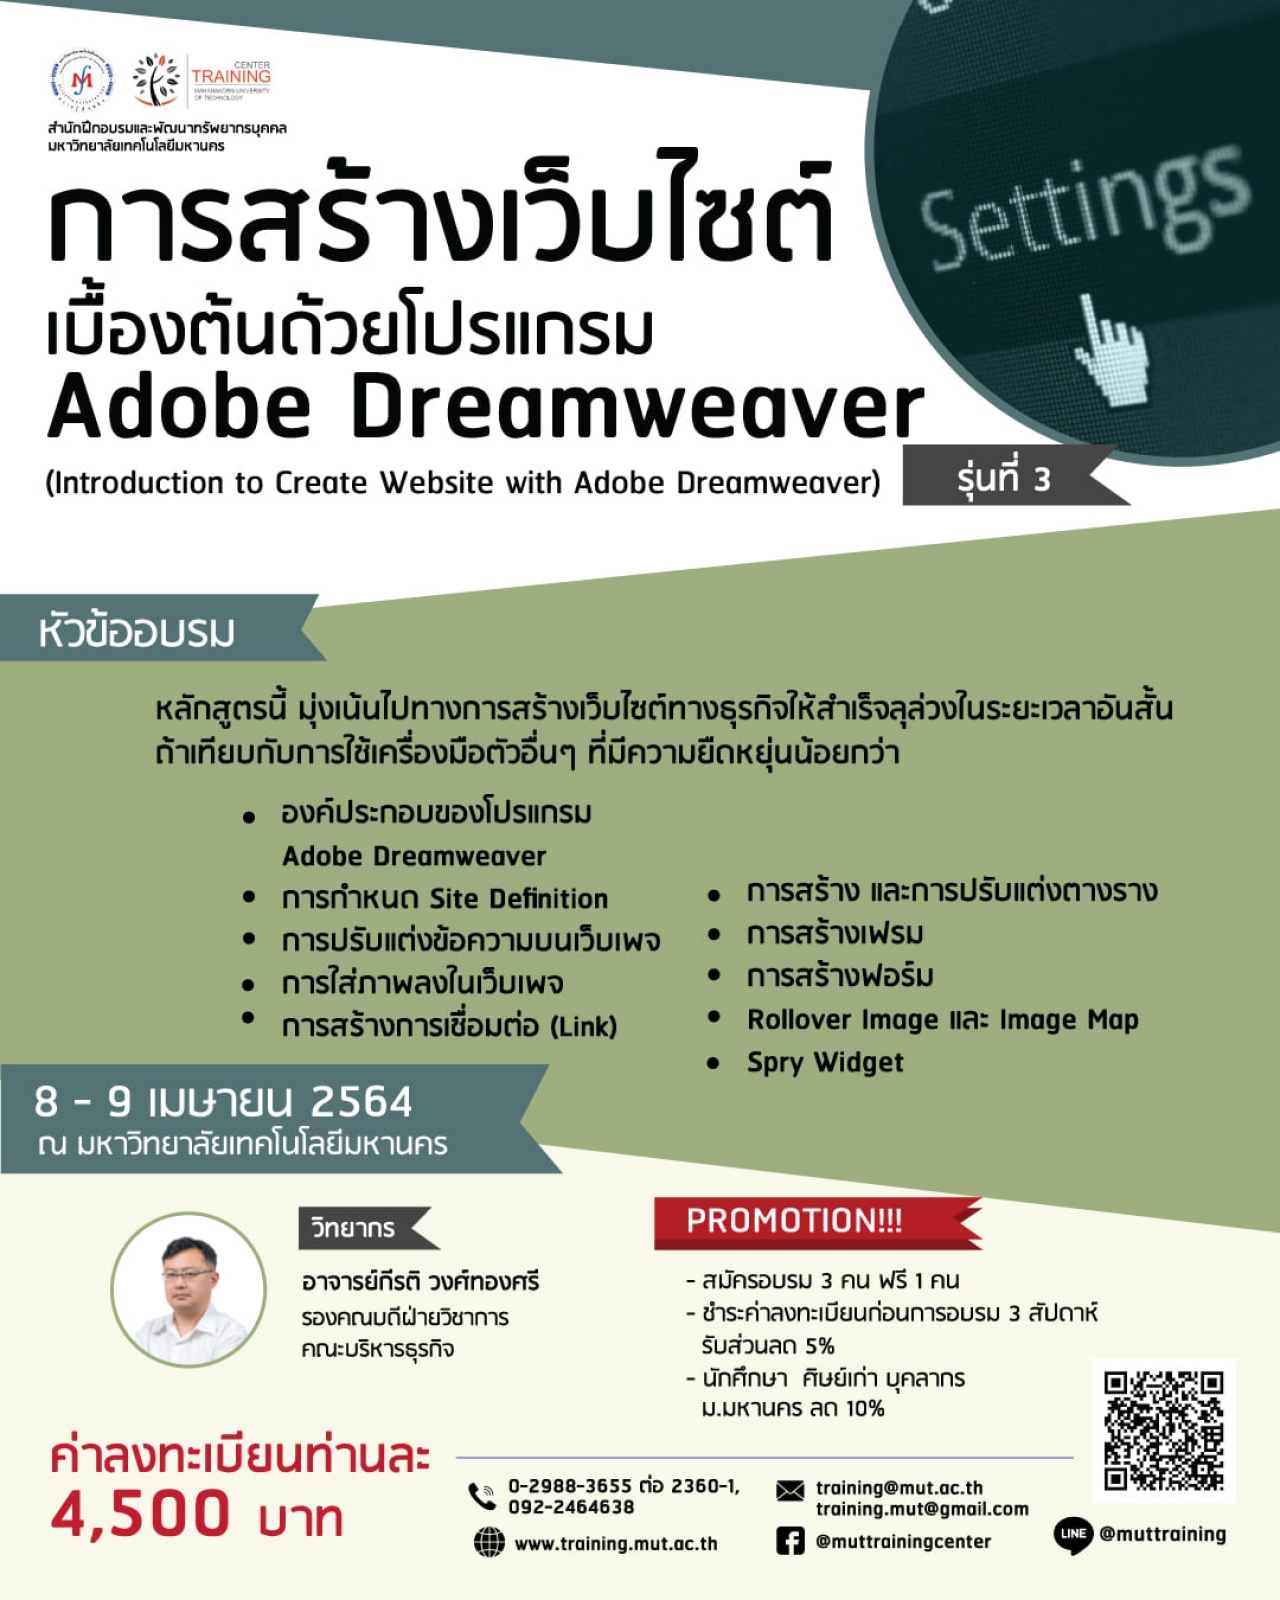 โครงการอบรม การสร้างเว็บไซต์เบื้องต้นด้วยโปรแกรม Adobe Dreamweaver (Introduction to Create Website with Adobe Dreamweaver) รุ่นที่ 3